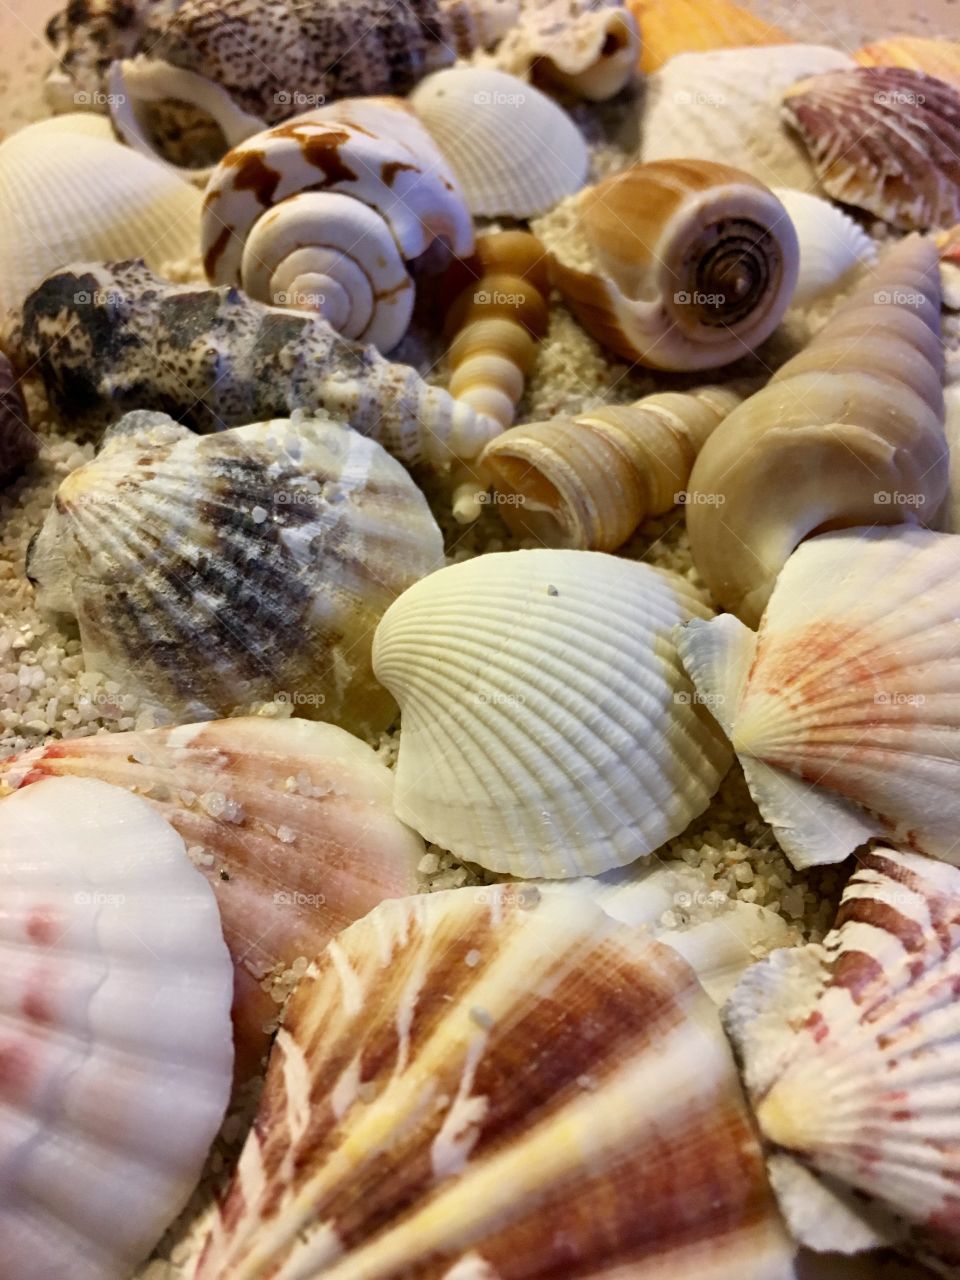 Abundance of seashells